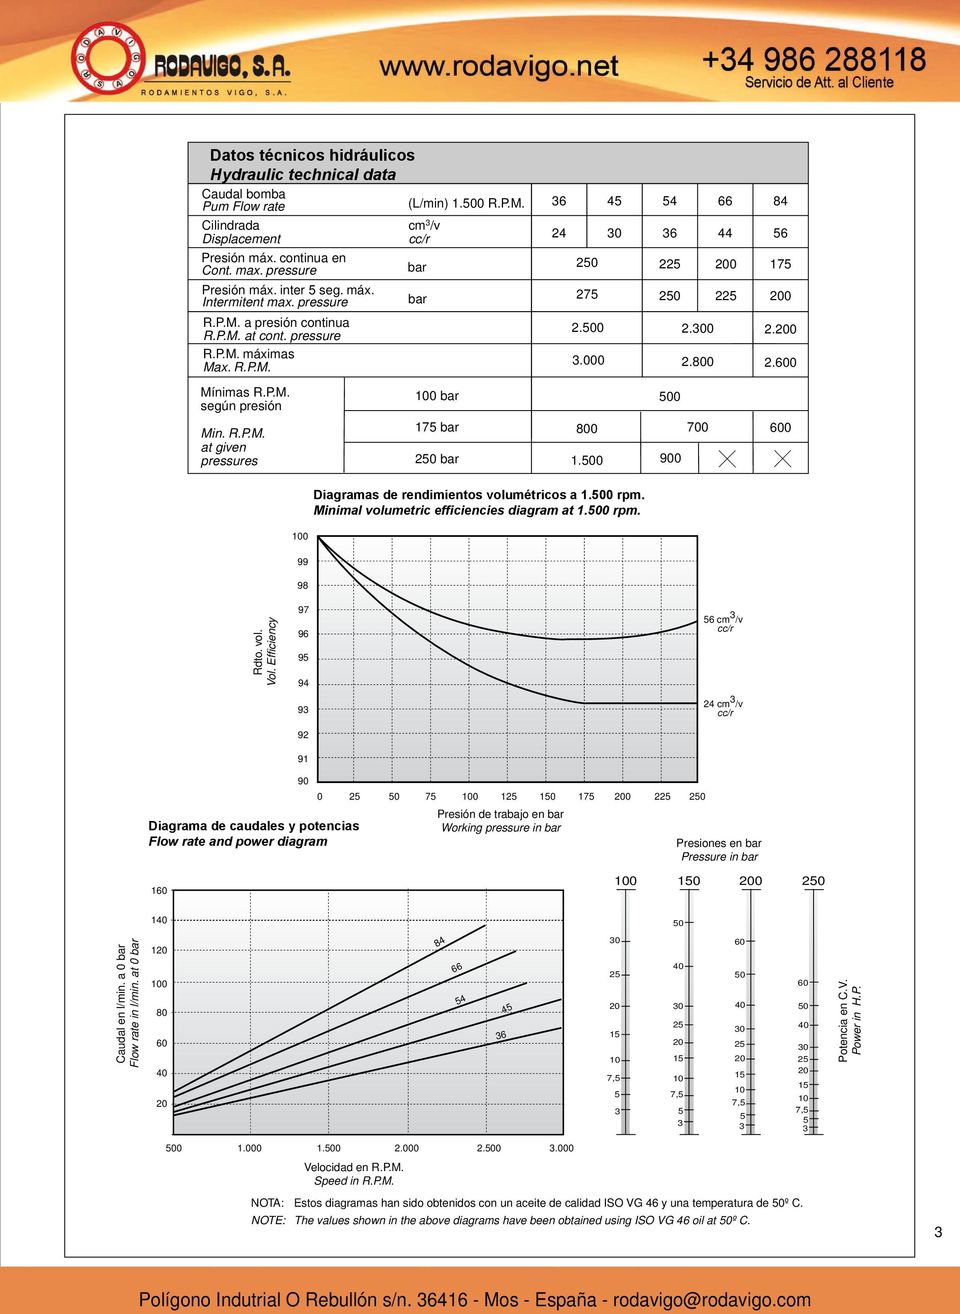 00 00 iagramas de rendimientos volumétricos a.00 rpm. Minimal volumetric efficiencies diagram at.00 rpm. 00 Rdto. vol. Vol.